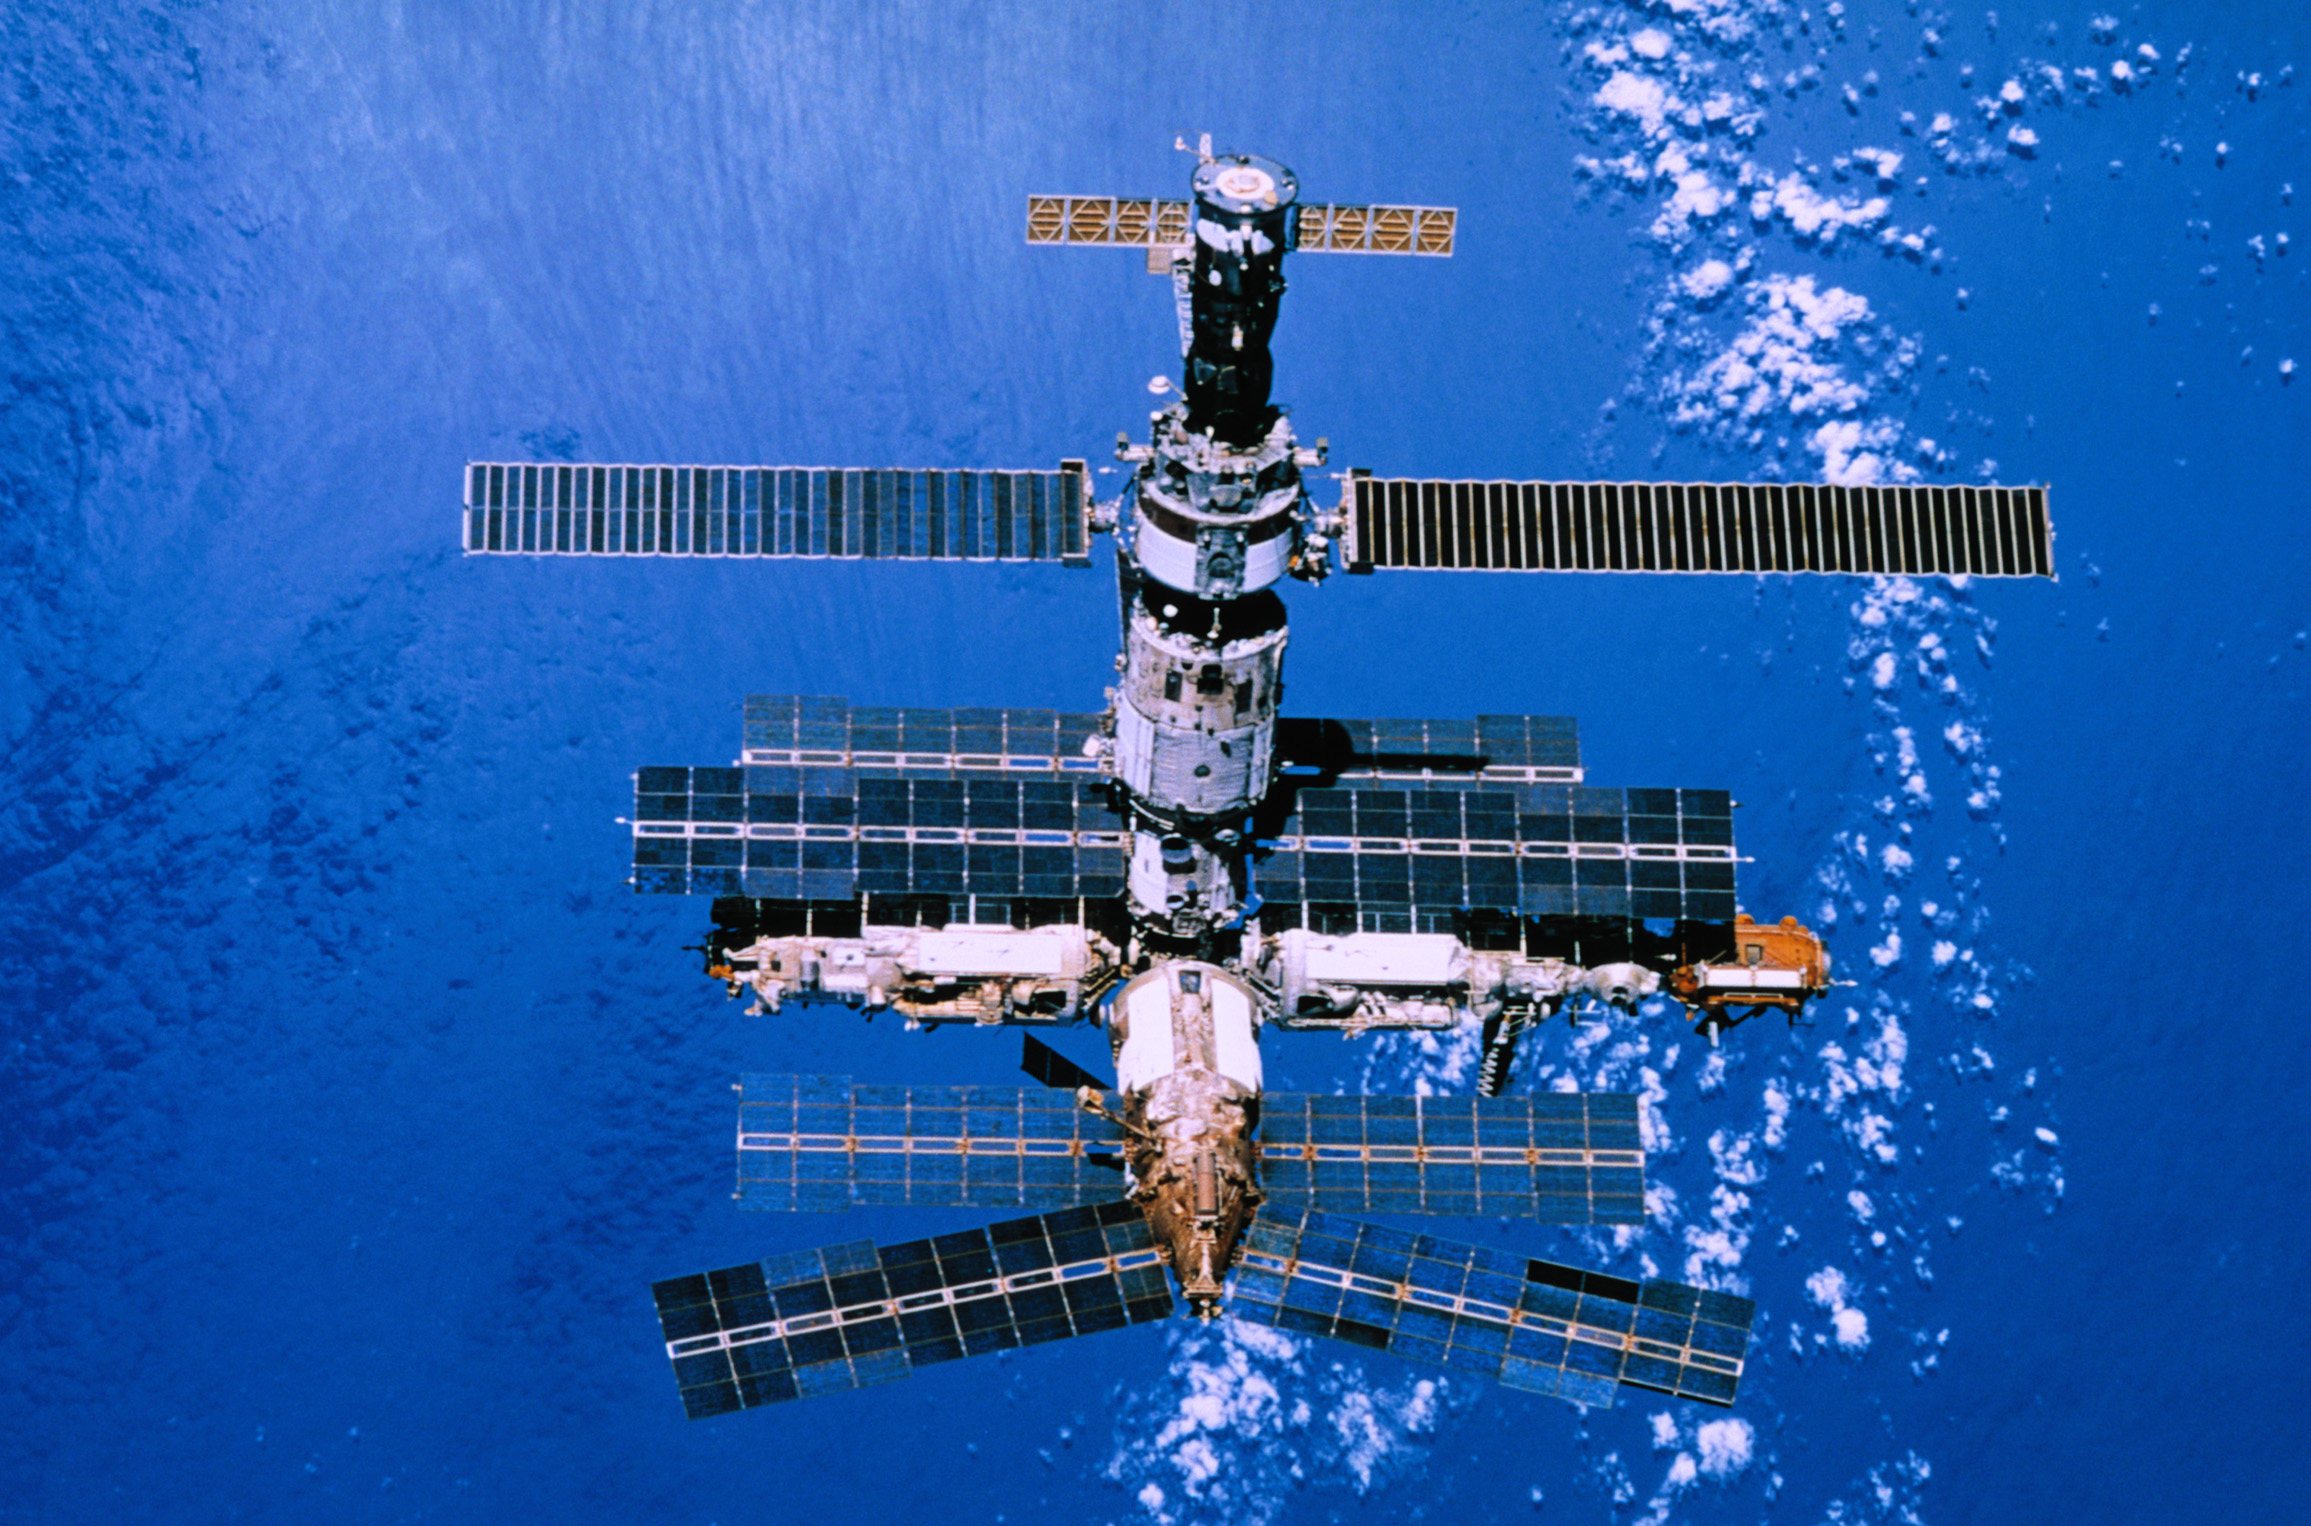 02 mir. Станция мир 1986. 1986 Запущена Советская орбитальная станция «мир». Мир Советская орбитальная станция 2001. В тихом океане затоплена орбитальная станция «мир».